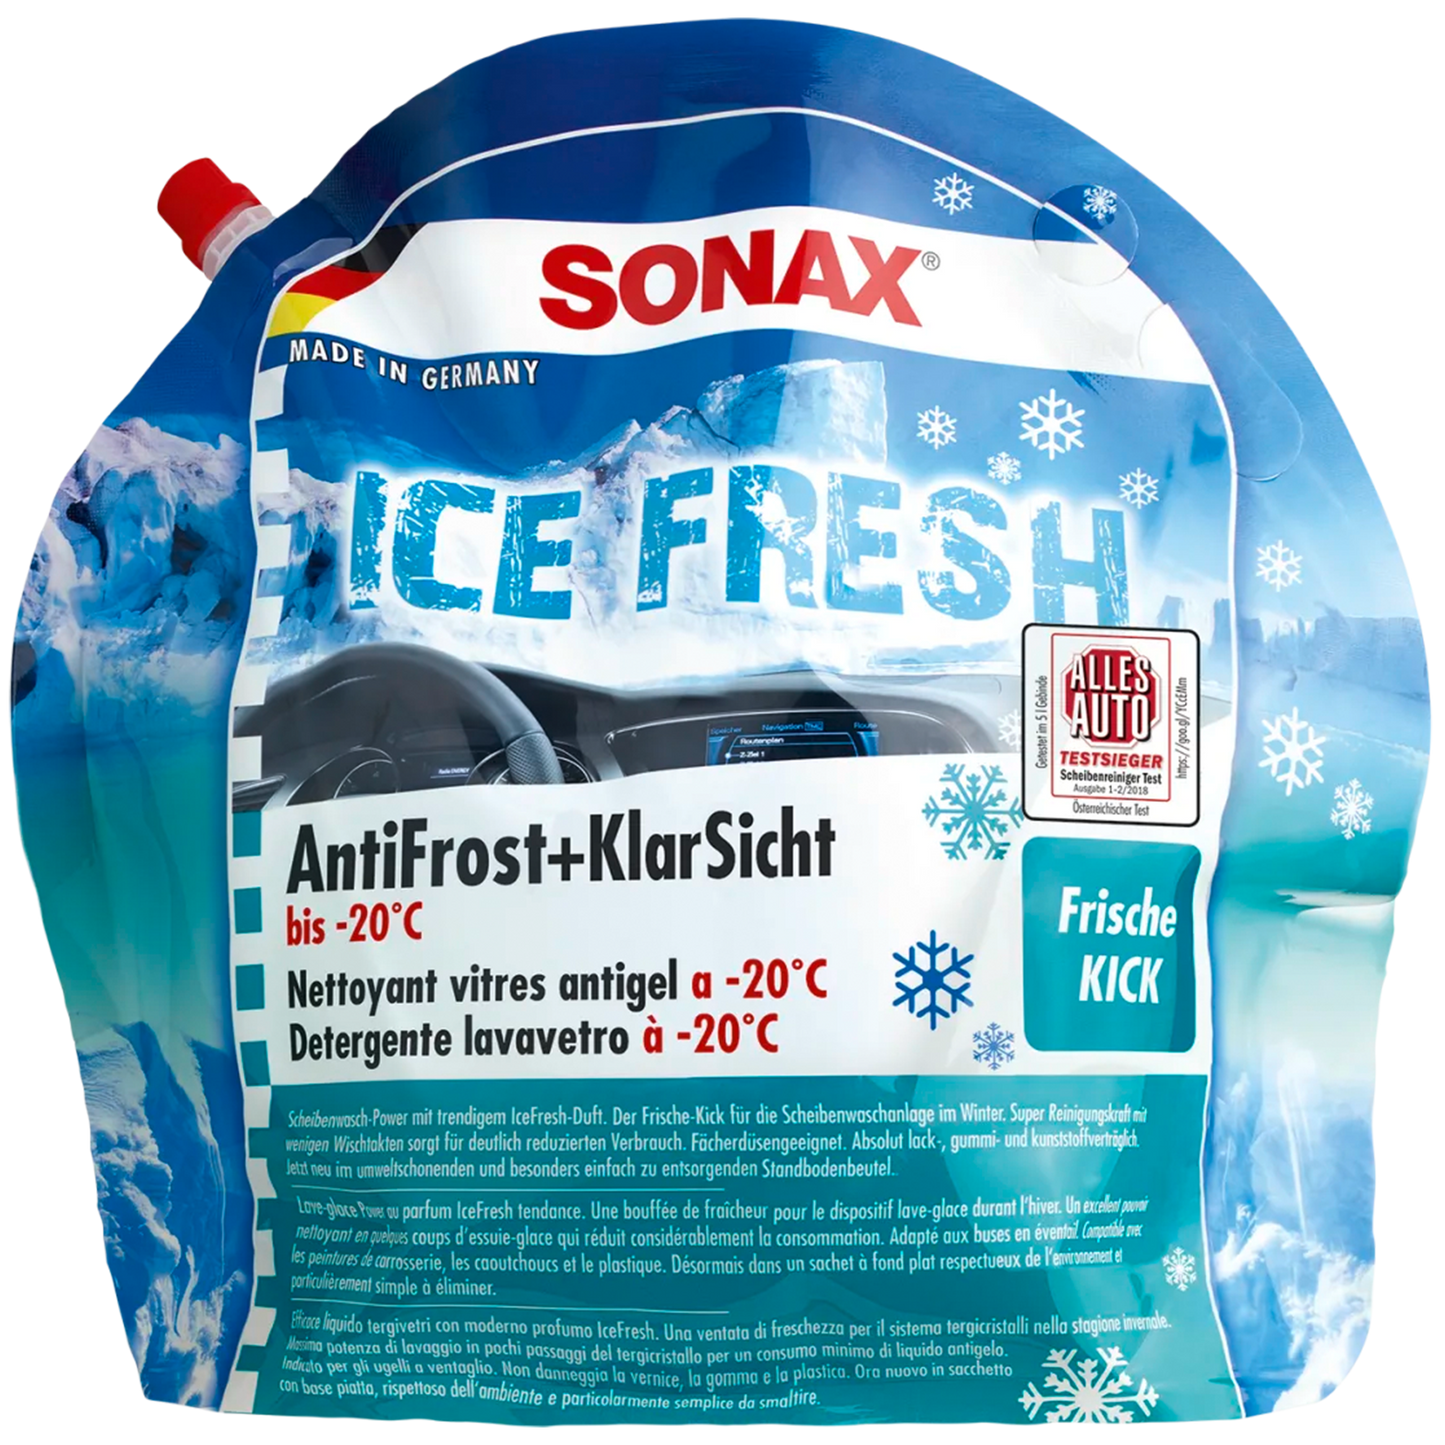 SONAX "Icefresh" Antifrost & Klarsicht bis -20°C